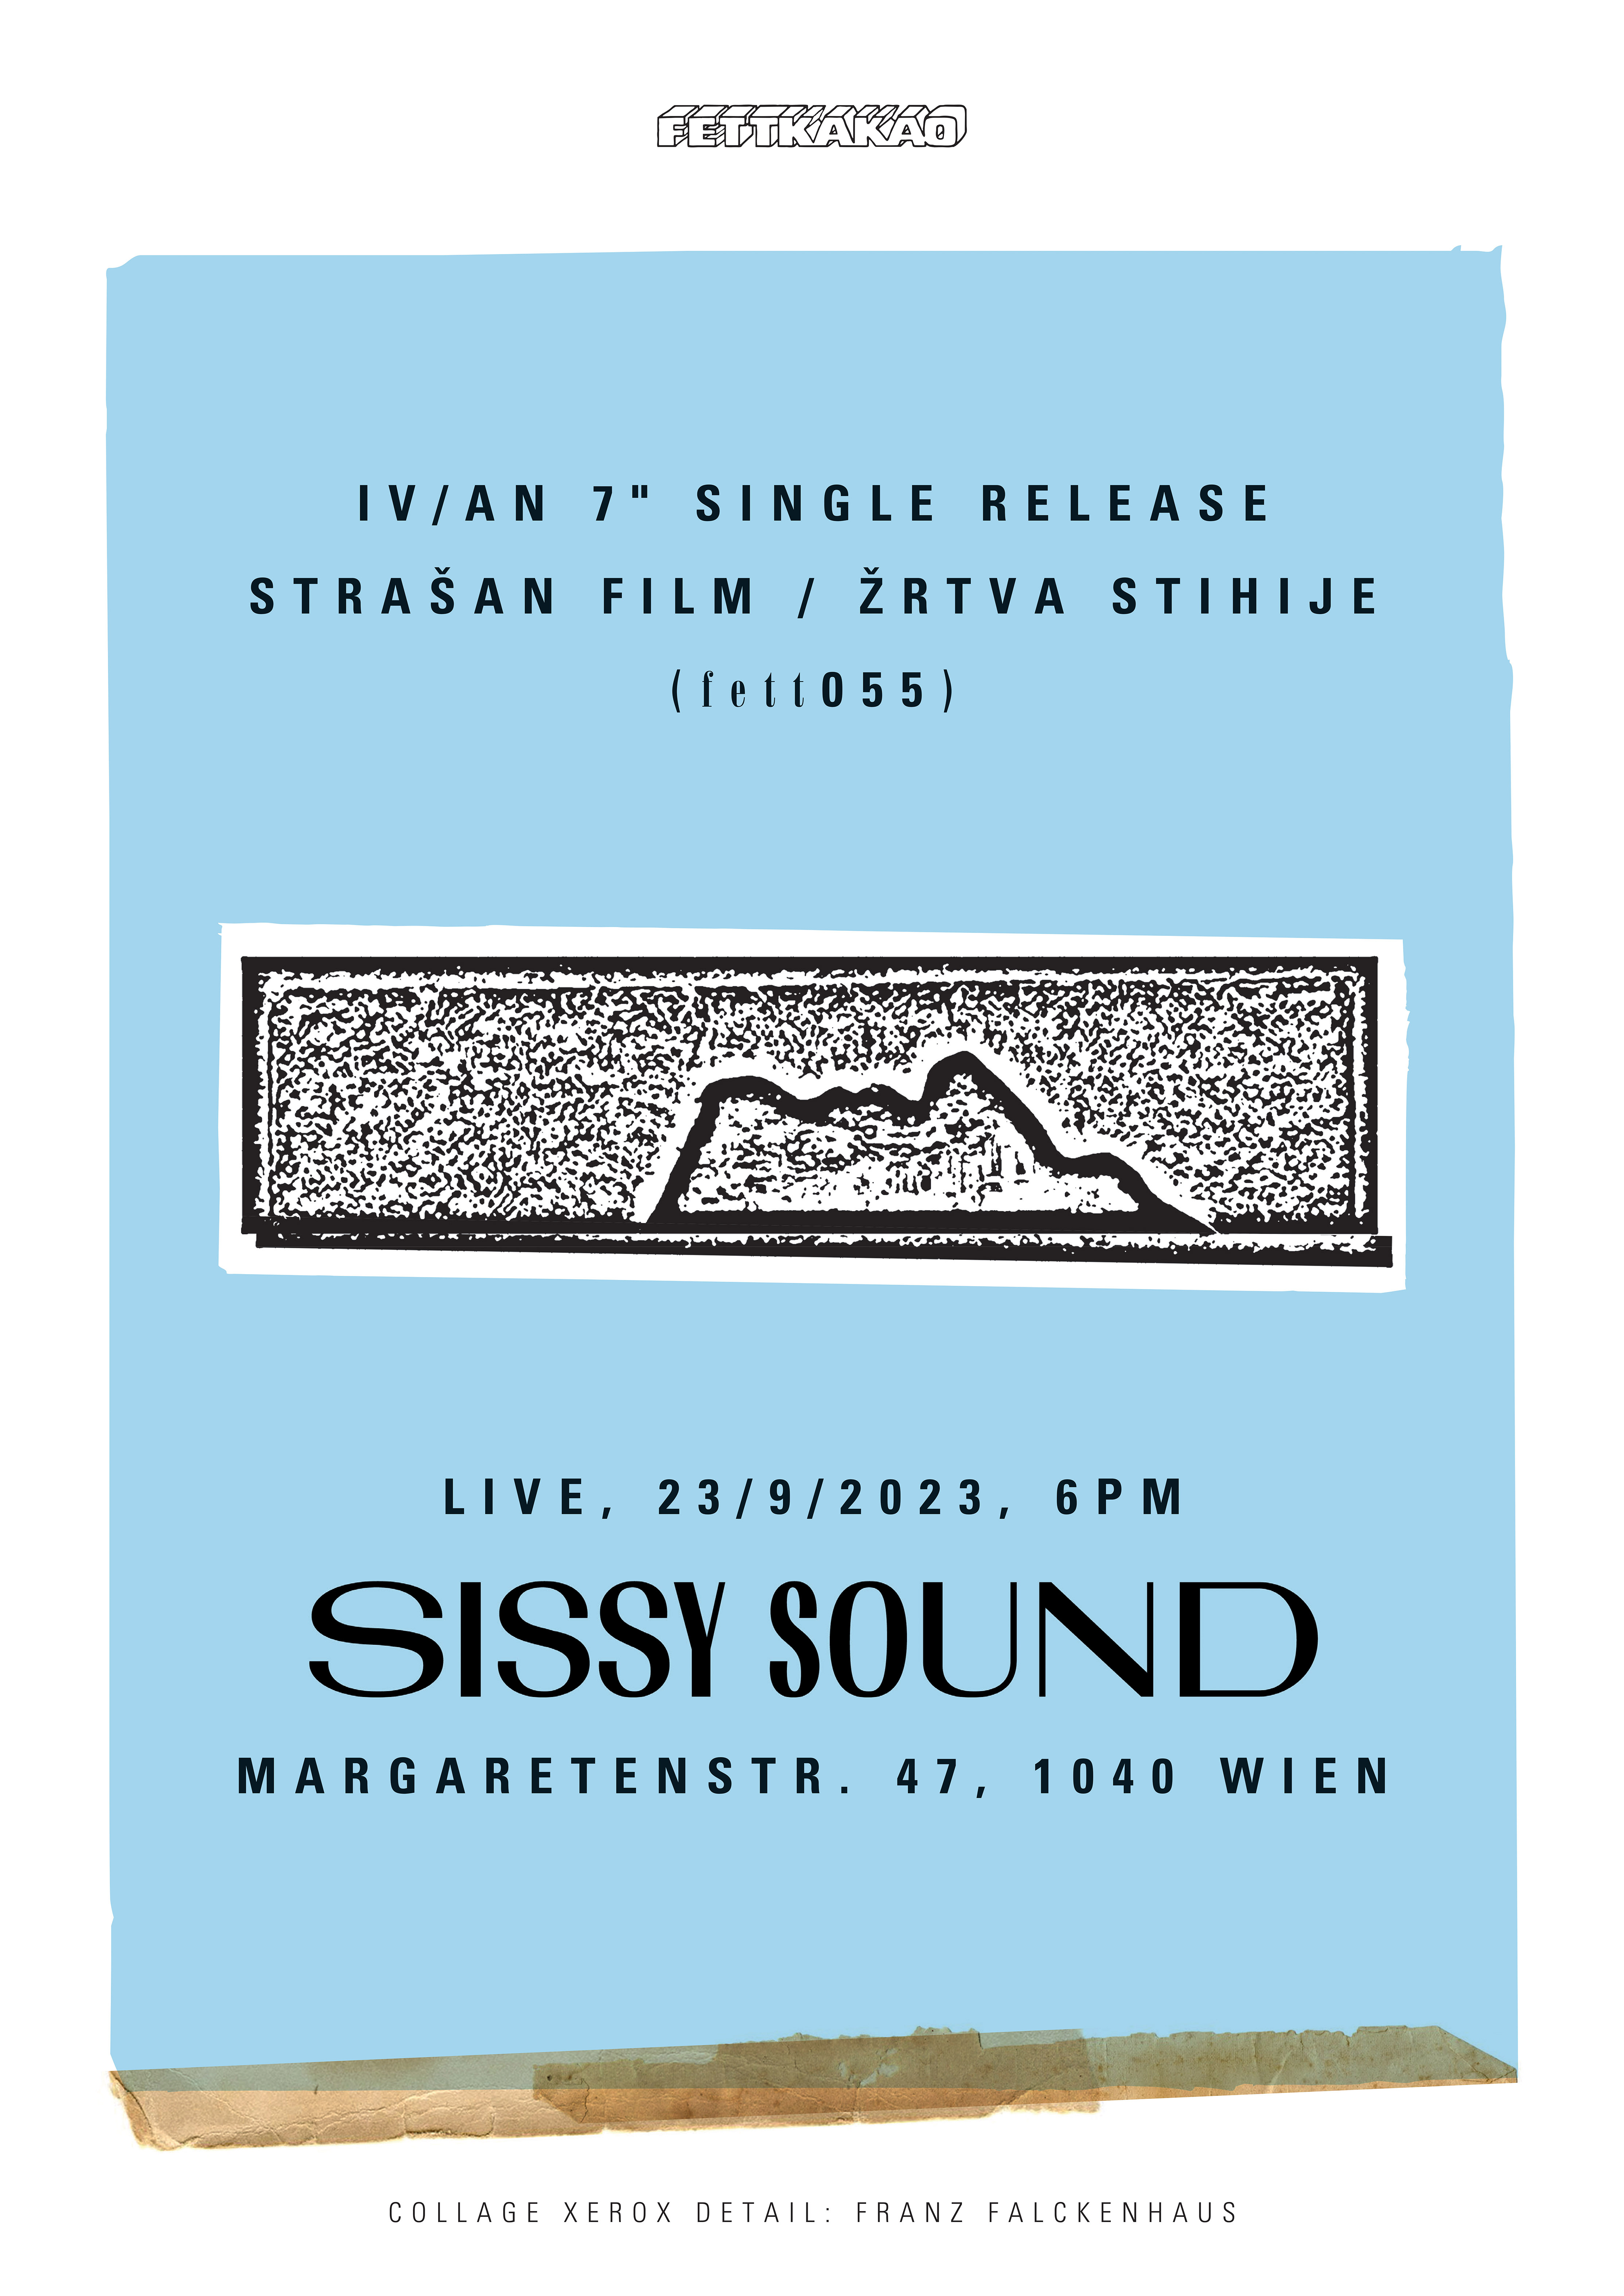 Iv/An - Žrtva Stihije 7" Vinyl Release Show